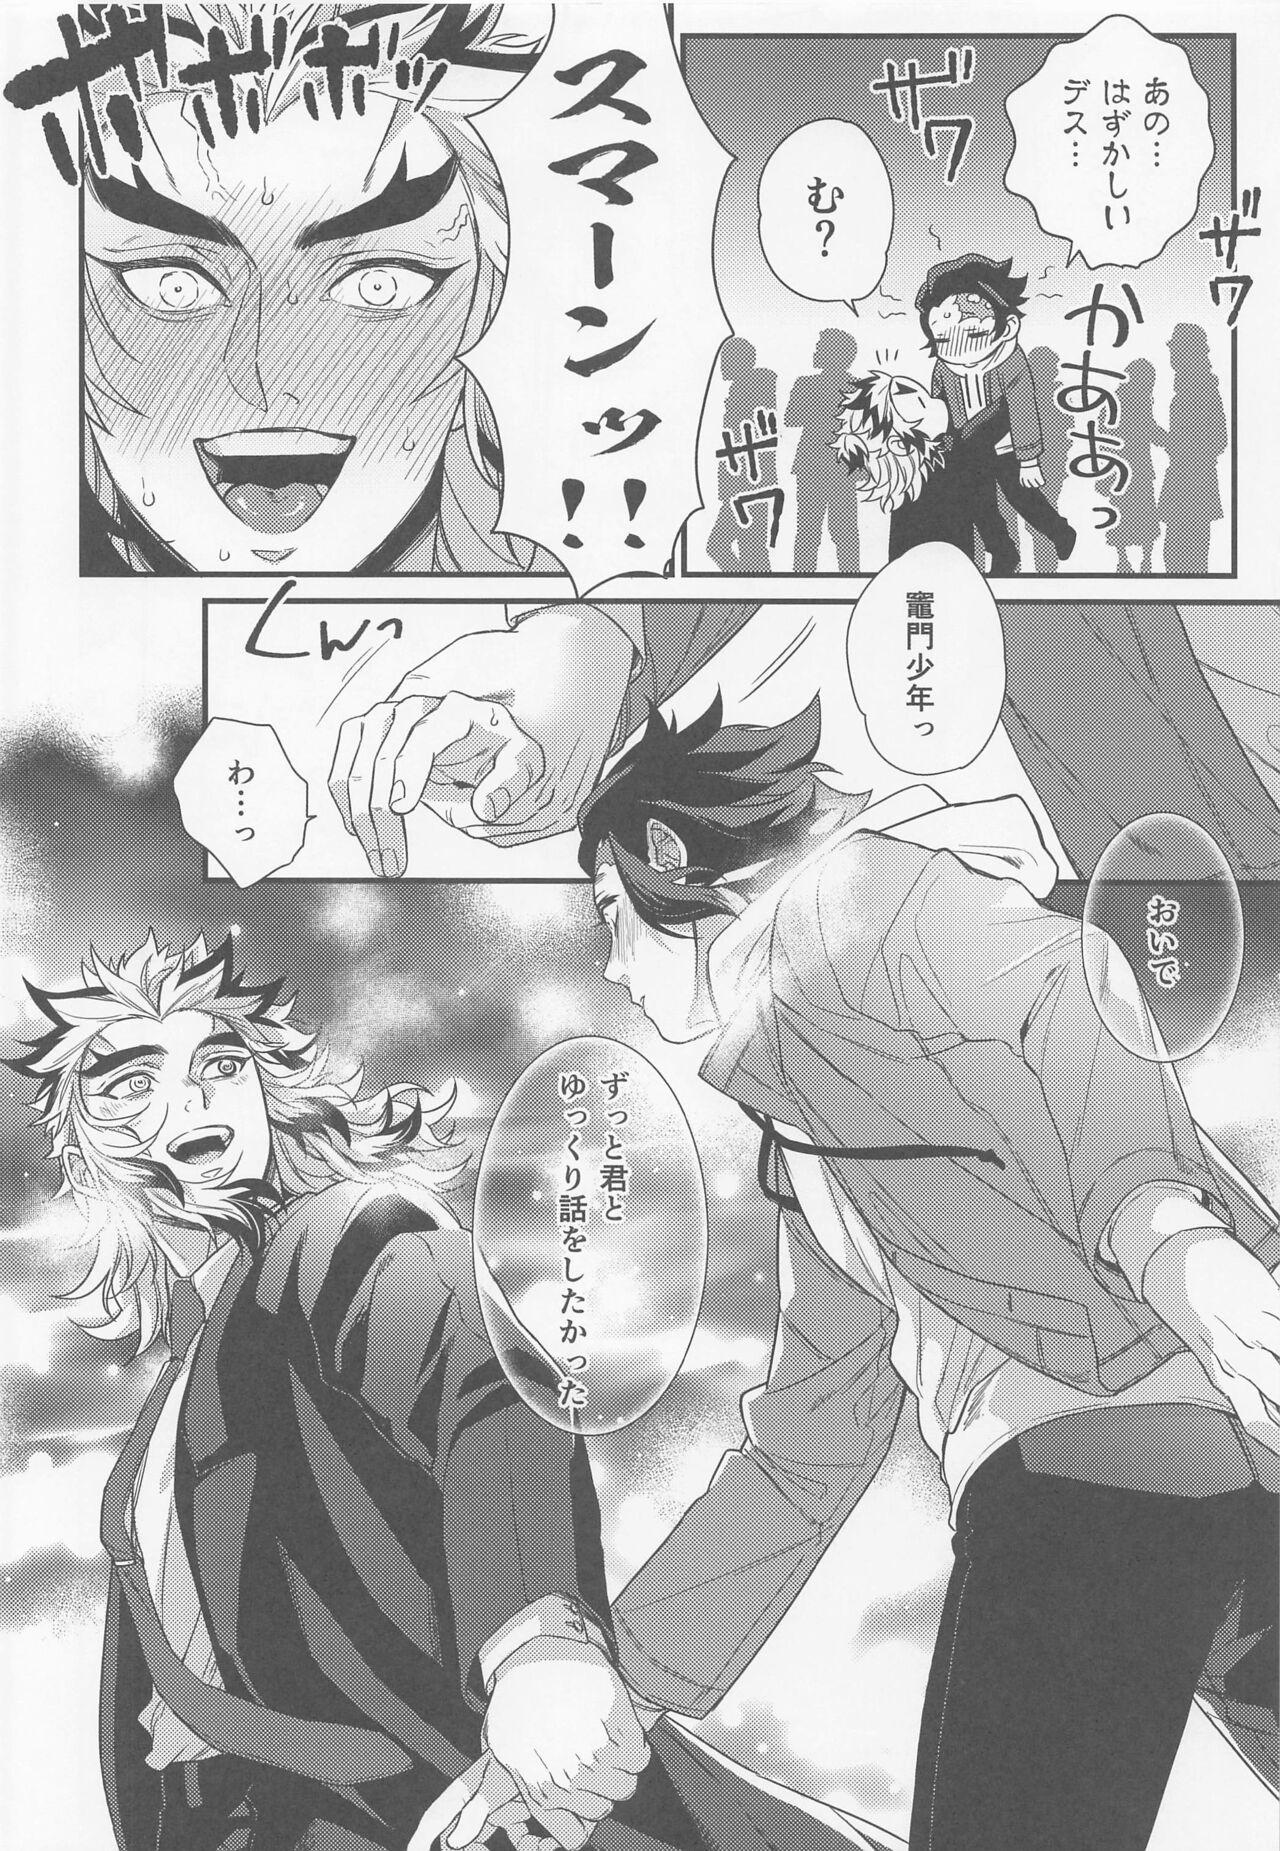 Small Tits sukida、shonen、daisukida - Kimetsu no yaiba | demon slayer Gay Party - Page 4